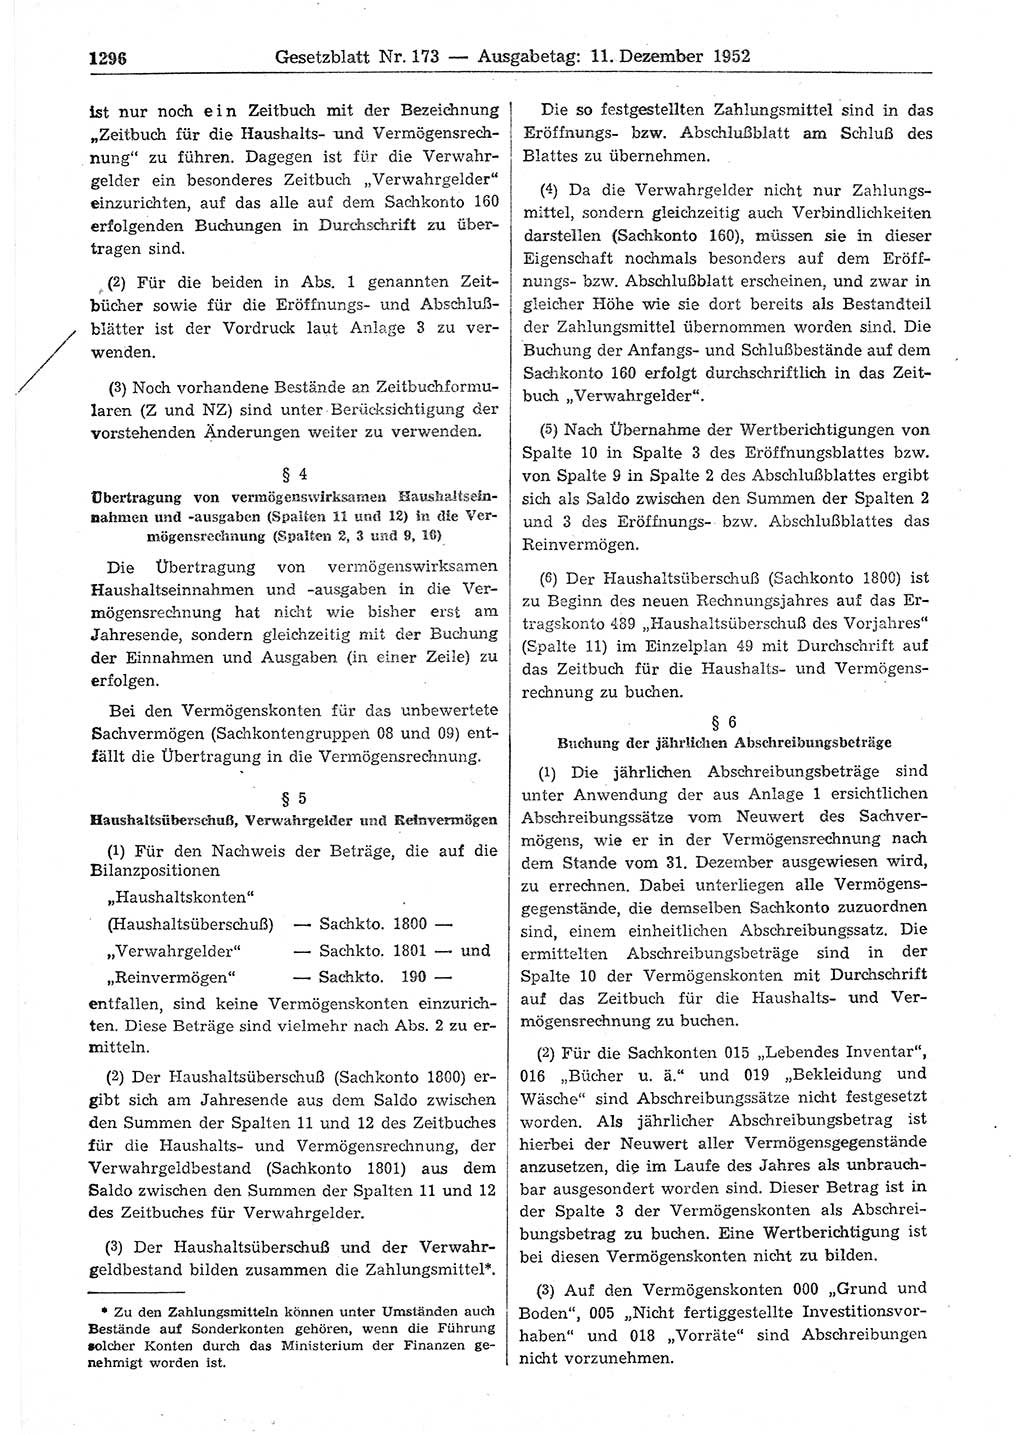 Gesetzblatt (GBl.) der Deutschen Demokratischen Republik (DDR) 1952, Seite 1296 (GBl. DDR 1952, S. 1296)